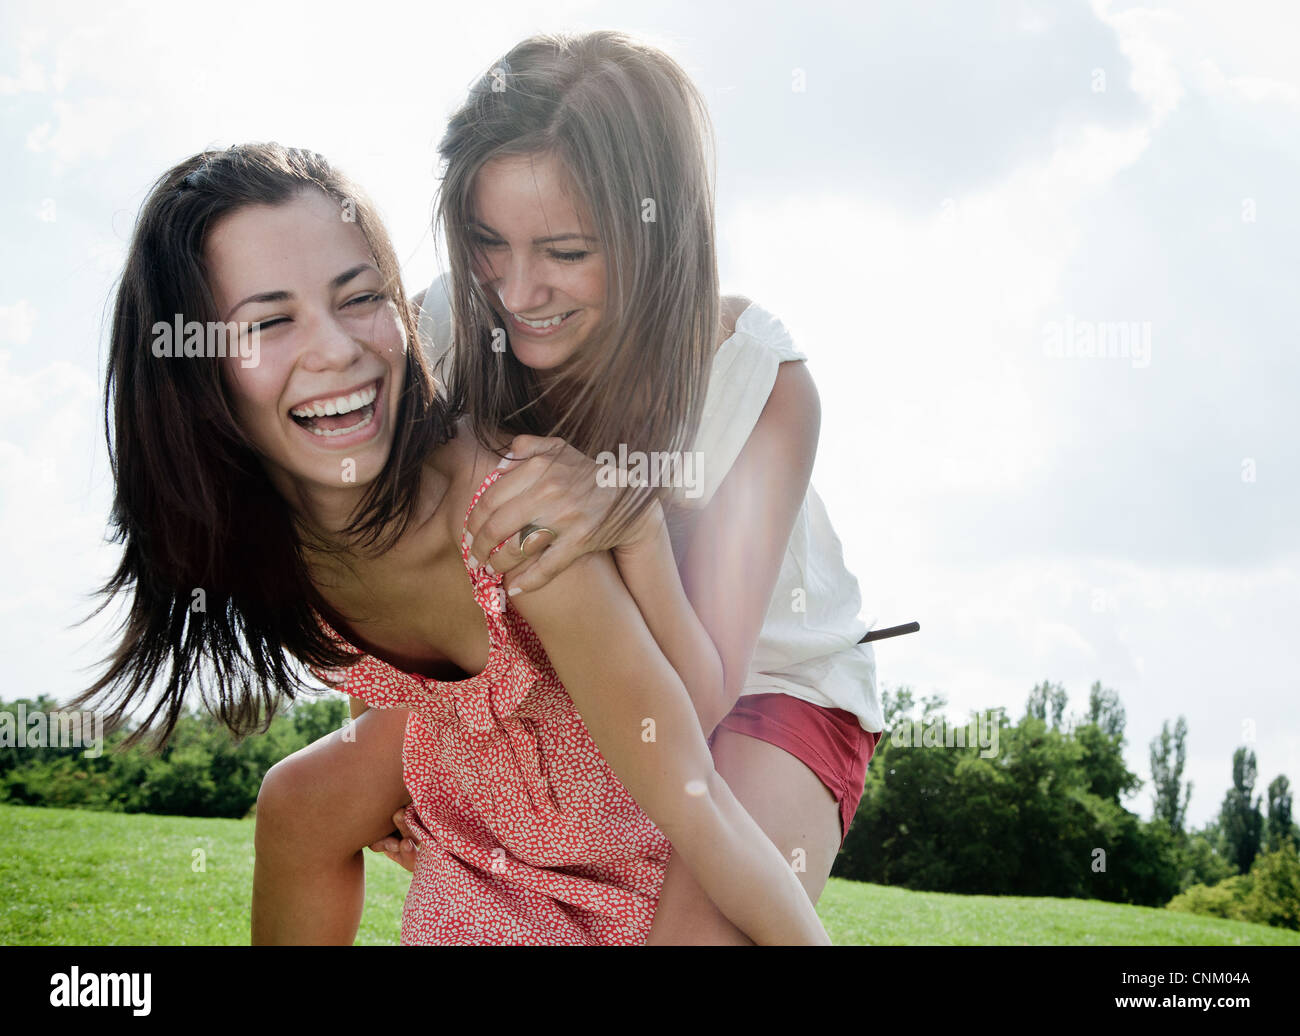 Smiling women joue dehors ensemble Banque D'Images